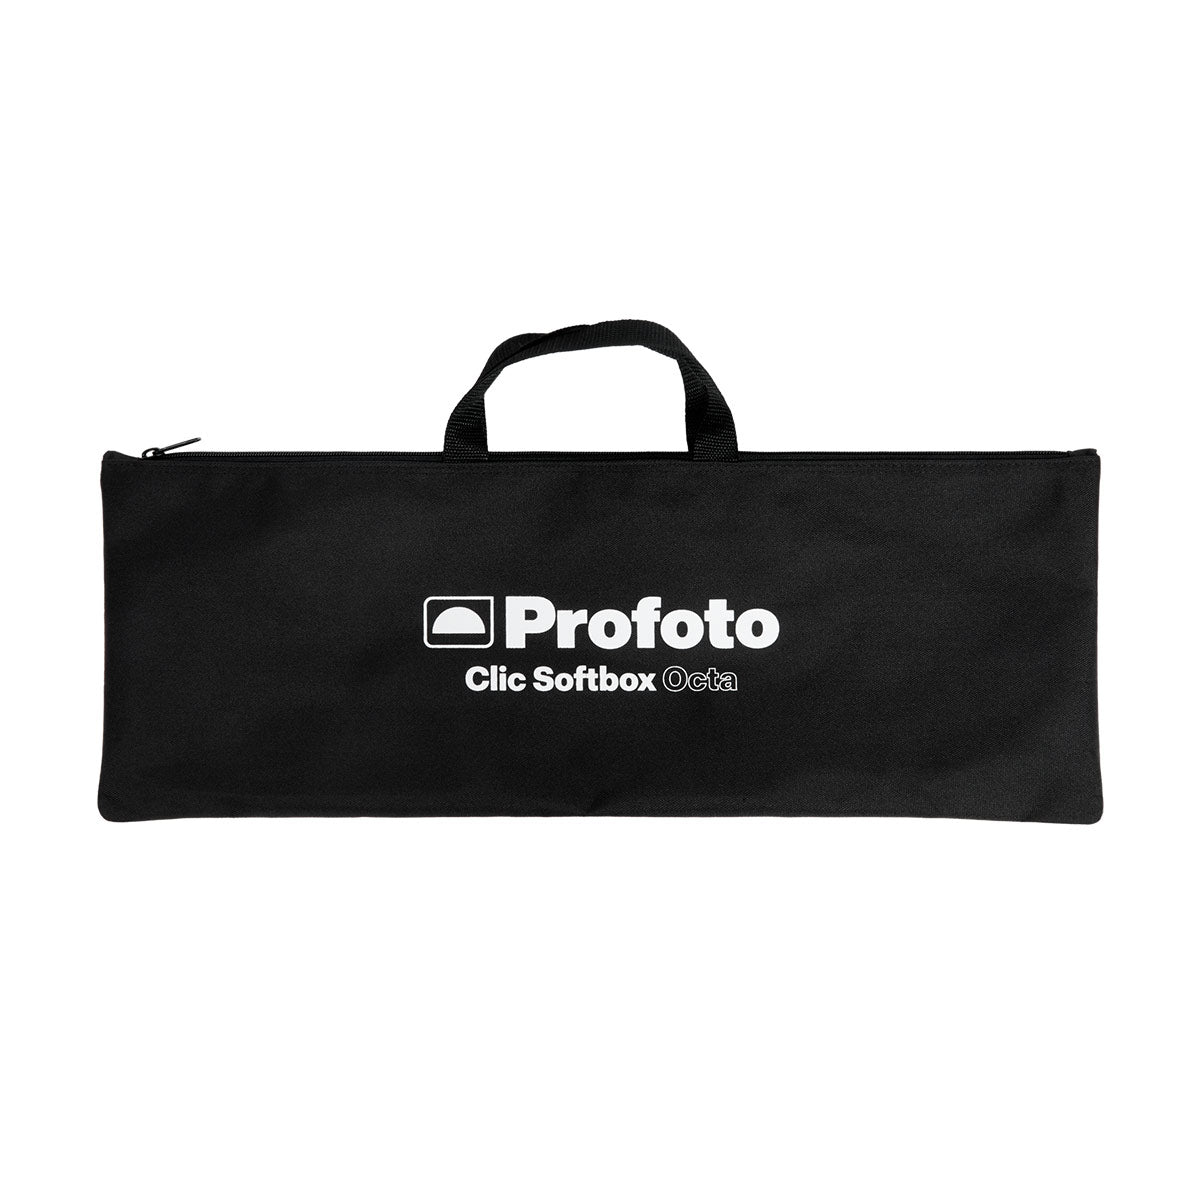 Profoto Clic Softbox Octa (2')